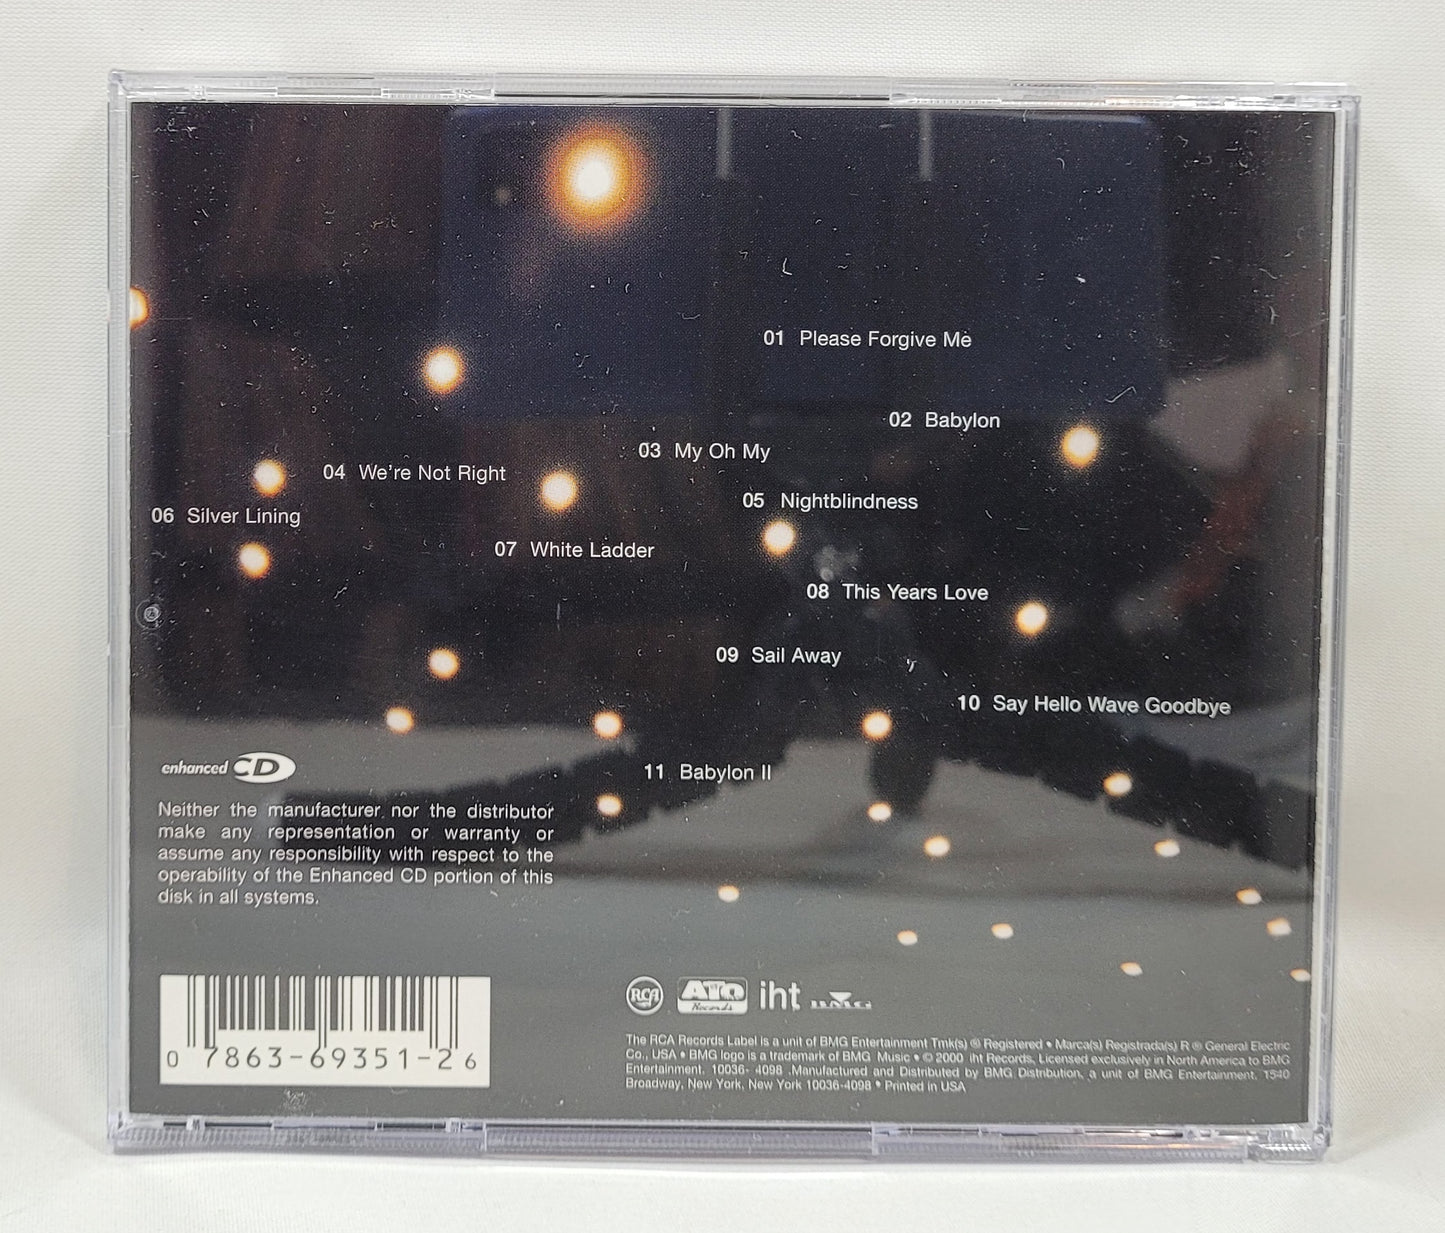 David Gray - White Ladder [2000 Reissue Enhanced] [Used CD] [B]